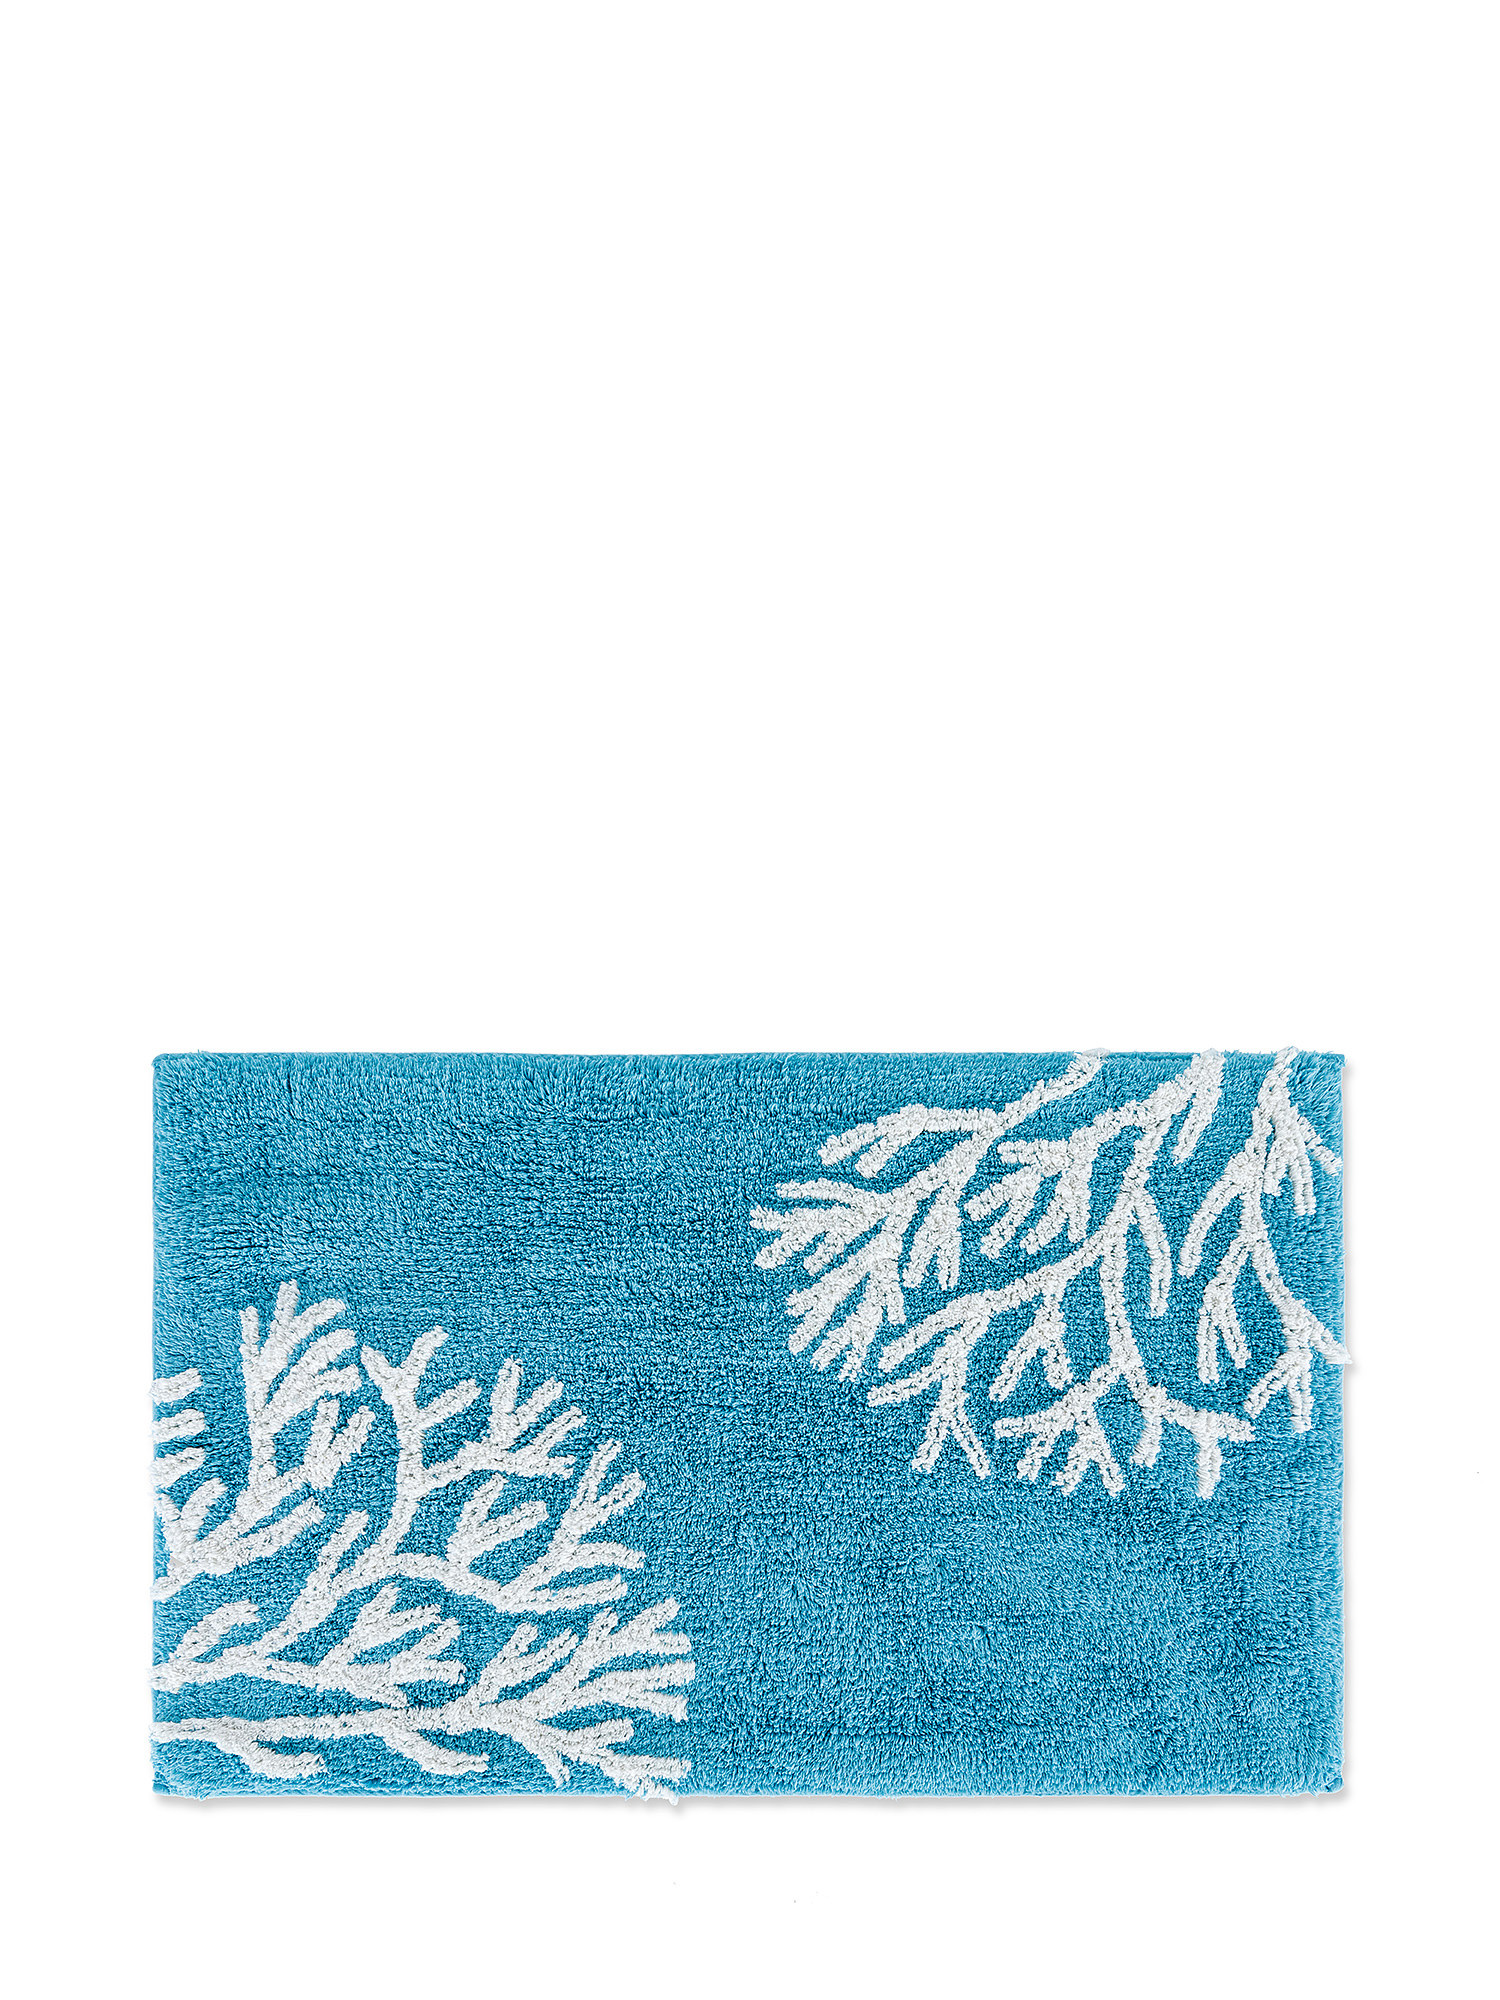 Tappeto bagno cotone motivo coralli, Azzurro, large image number 0